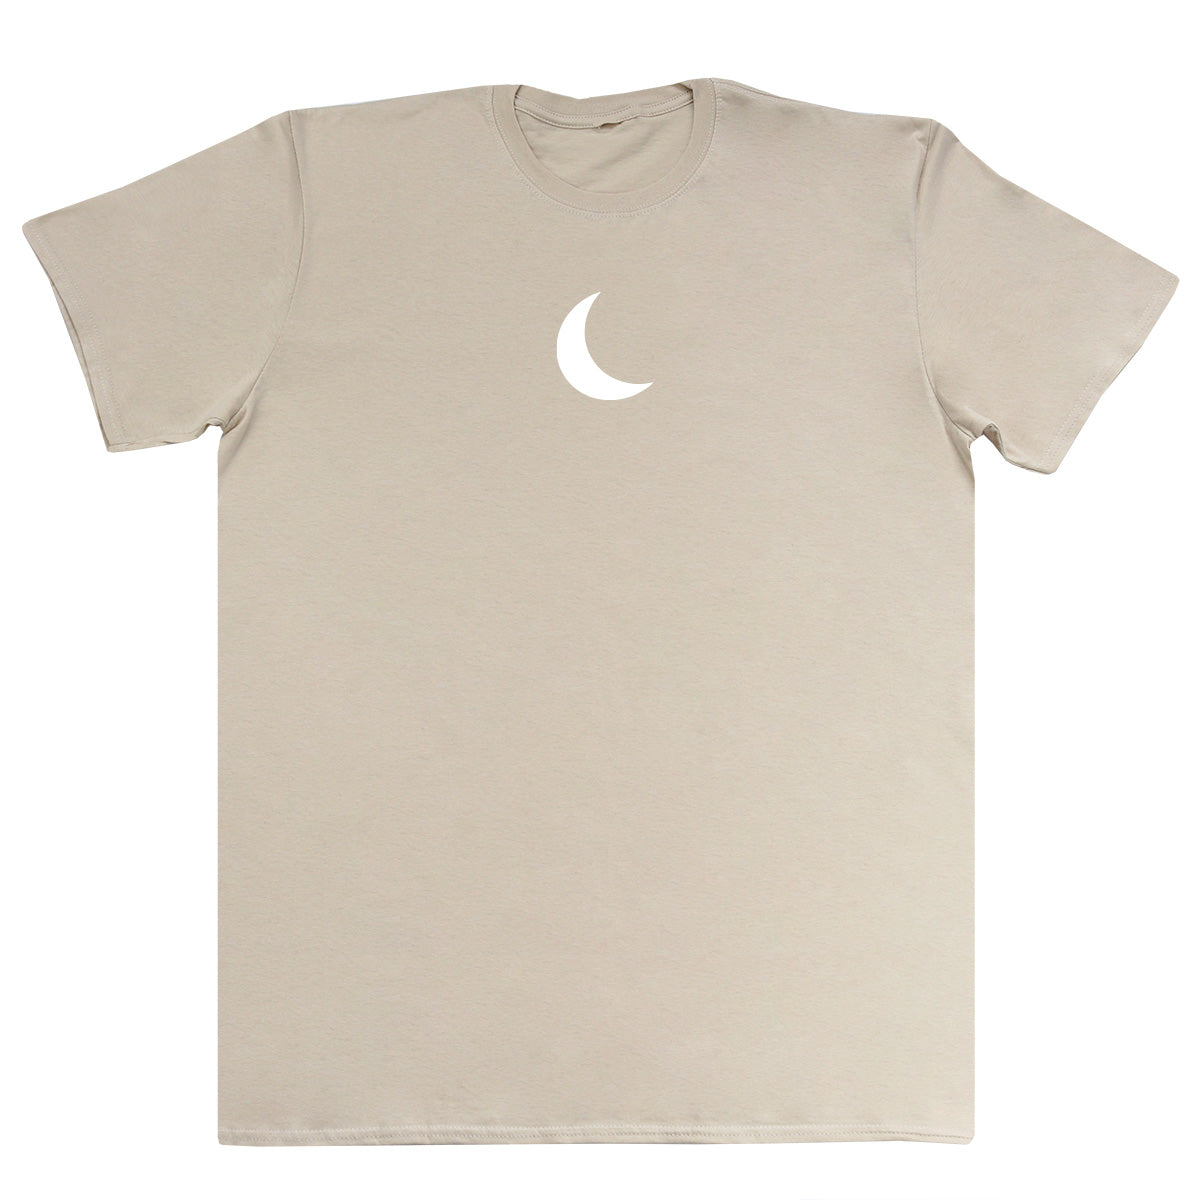 Crescent - Huge Oversized Comfy Original T-Shirt